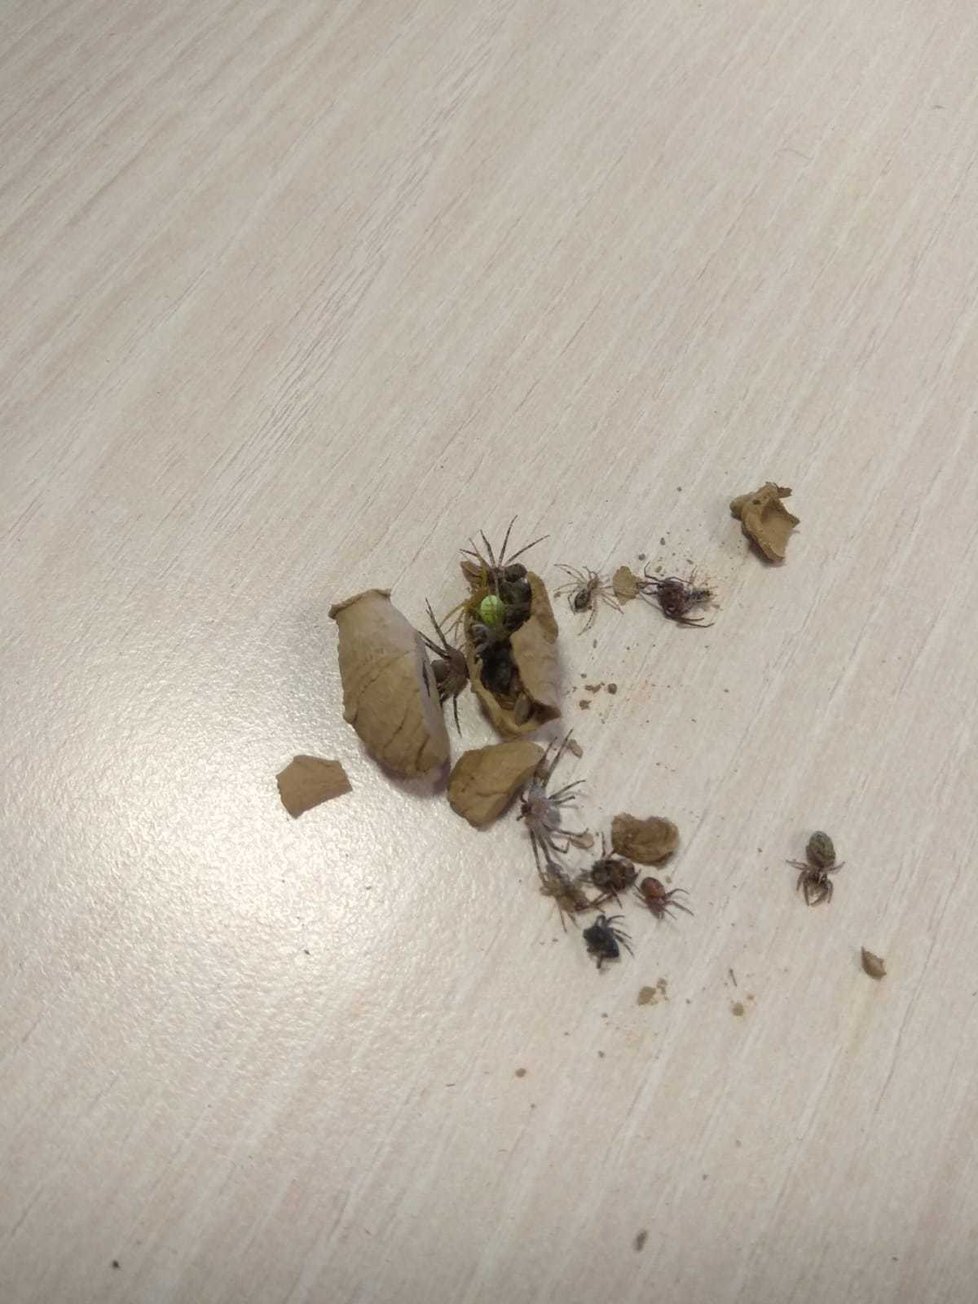 Fotkami rozbitých komůrek plných pavouků se na sociální síti pochlubila i Marie Petrová. „Poslal mi je kolega, našli je ve skladu firmy,“ dodala.